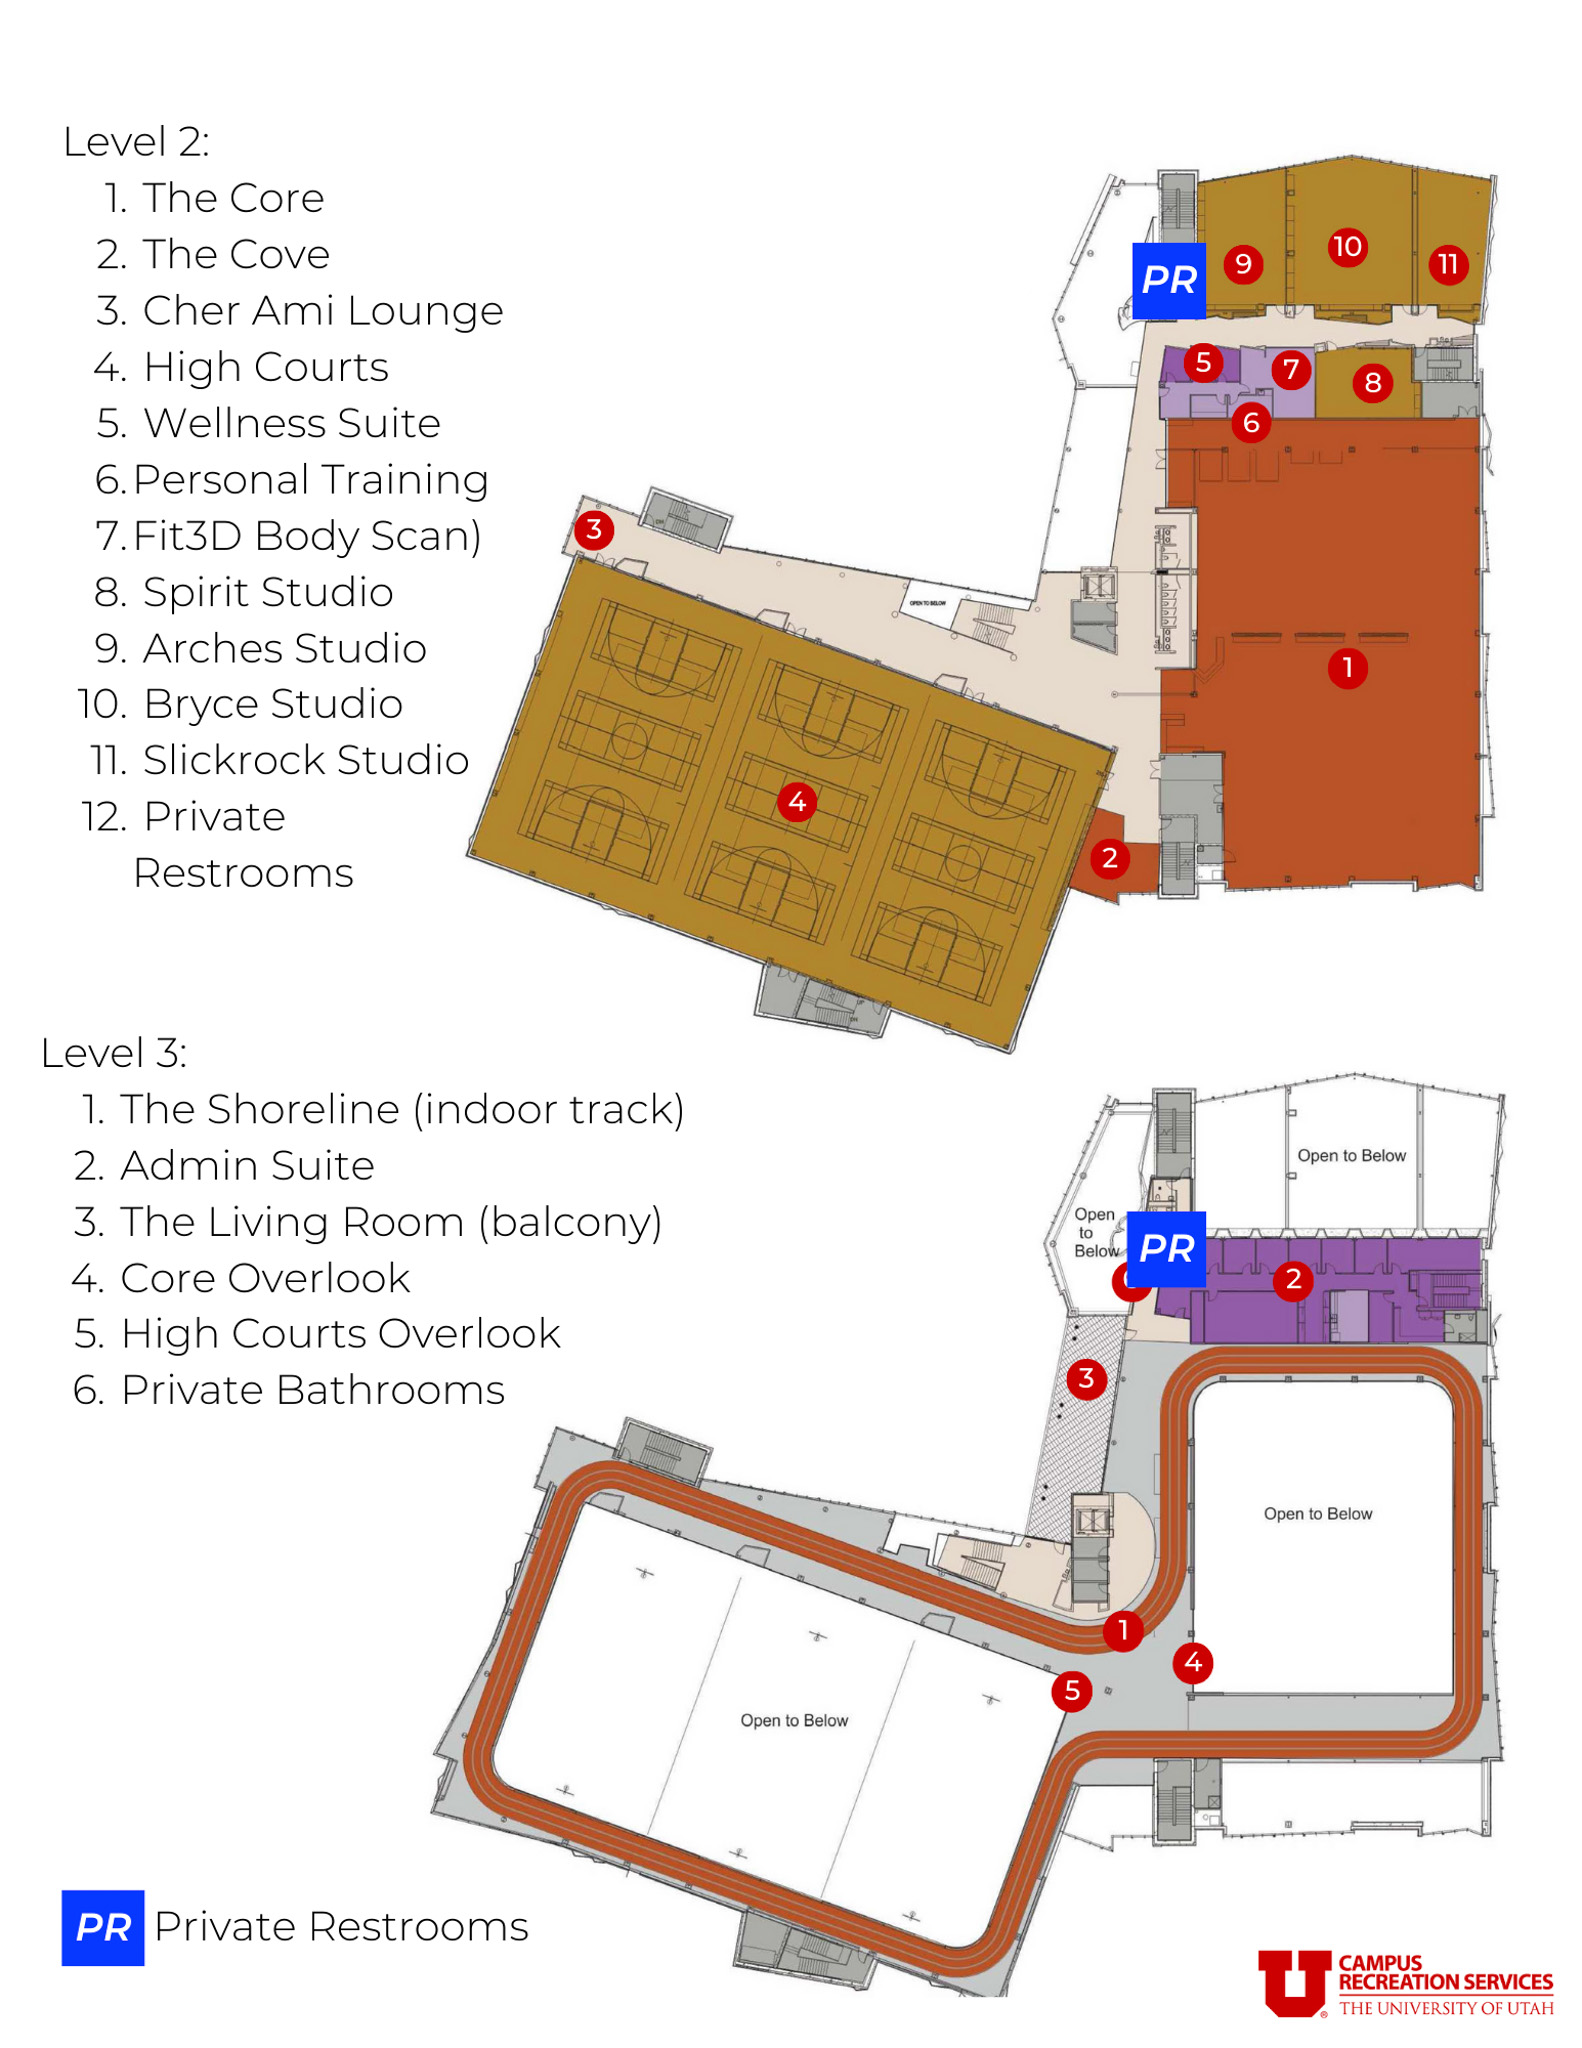 Second floor and third floor map